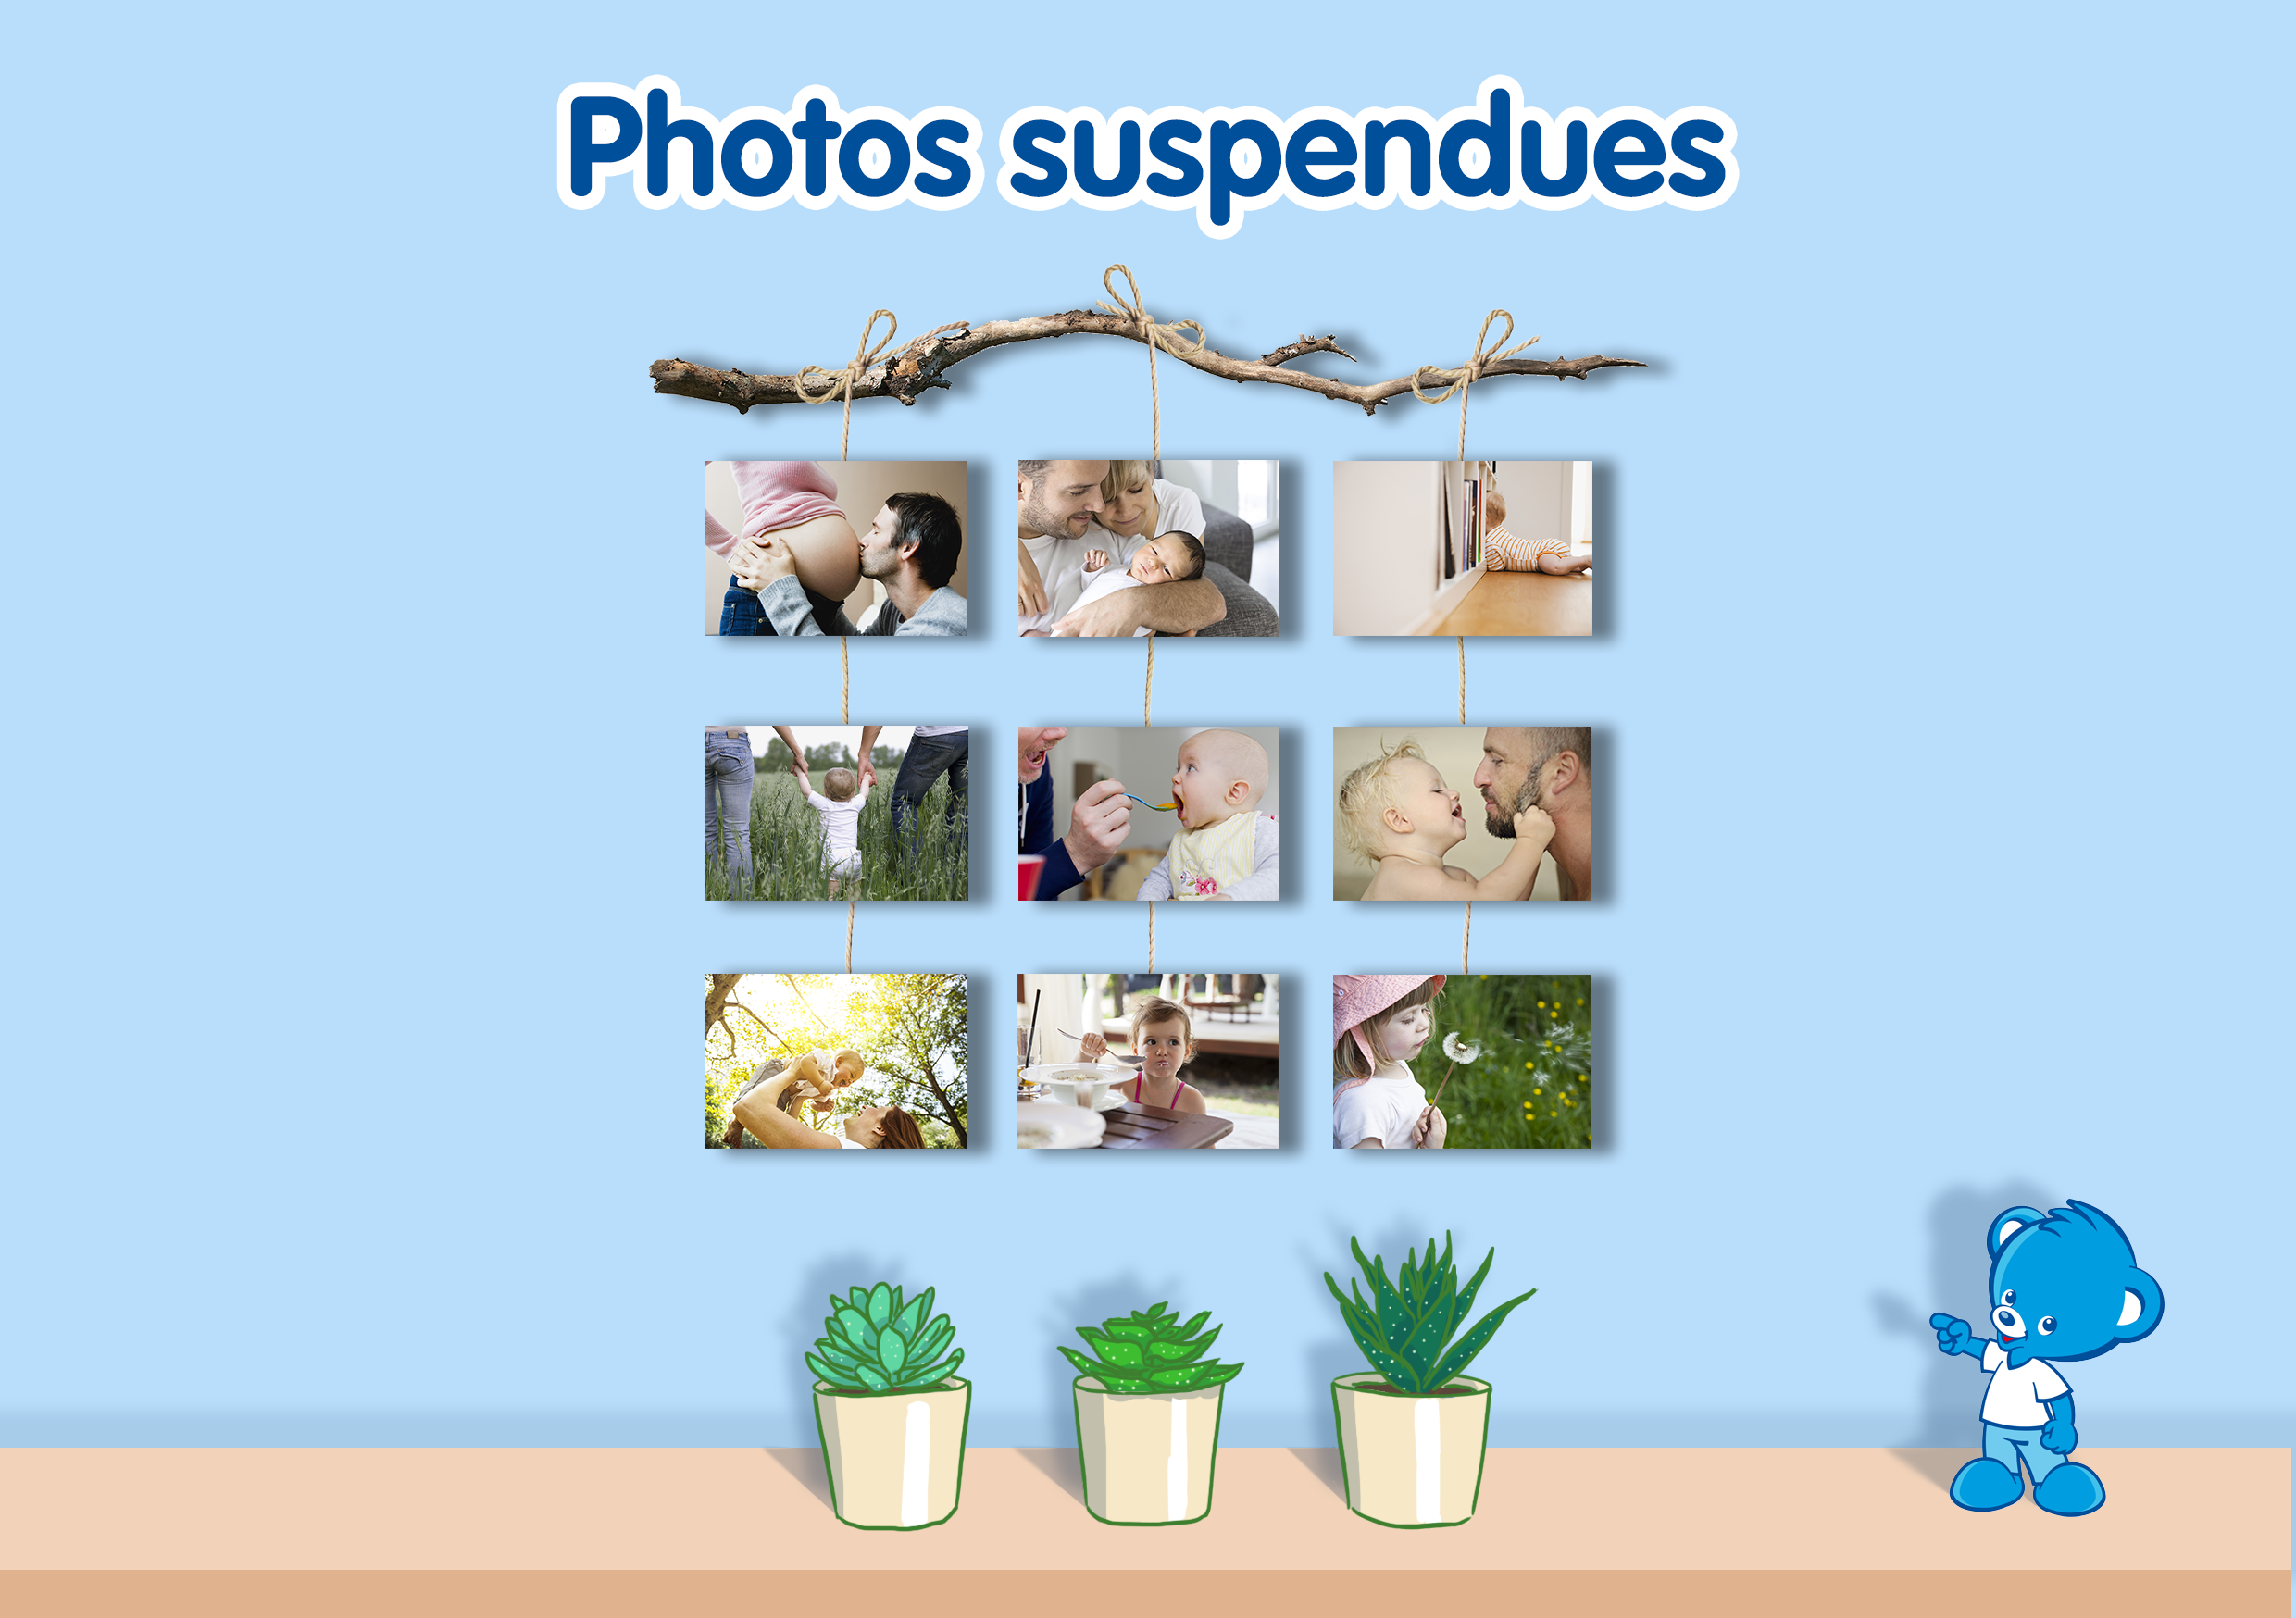 Photos suspendues